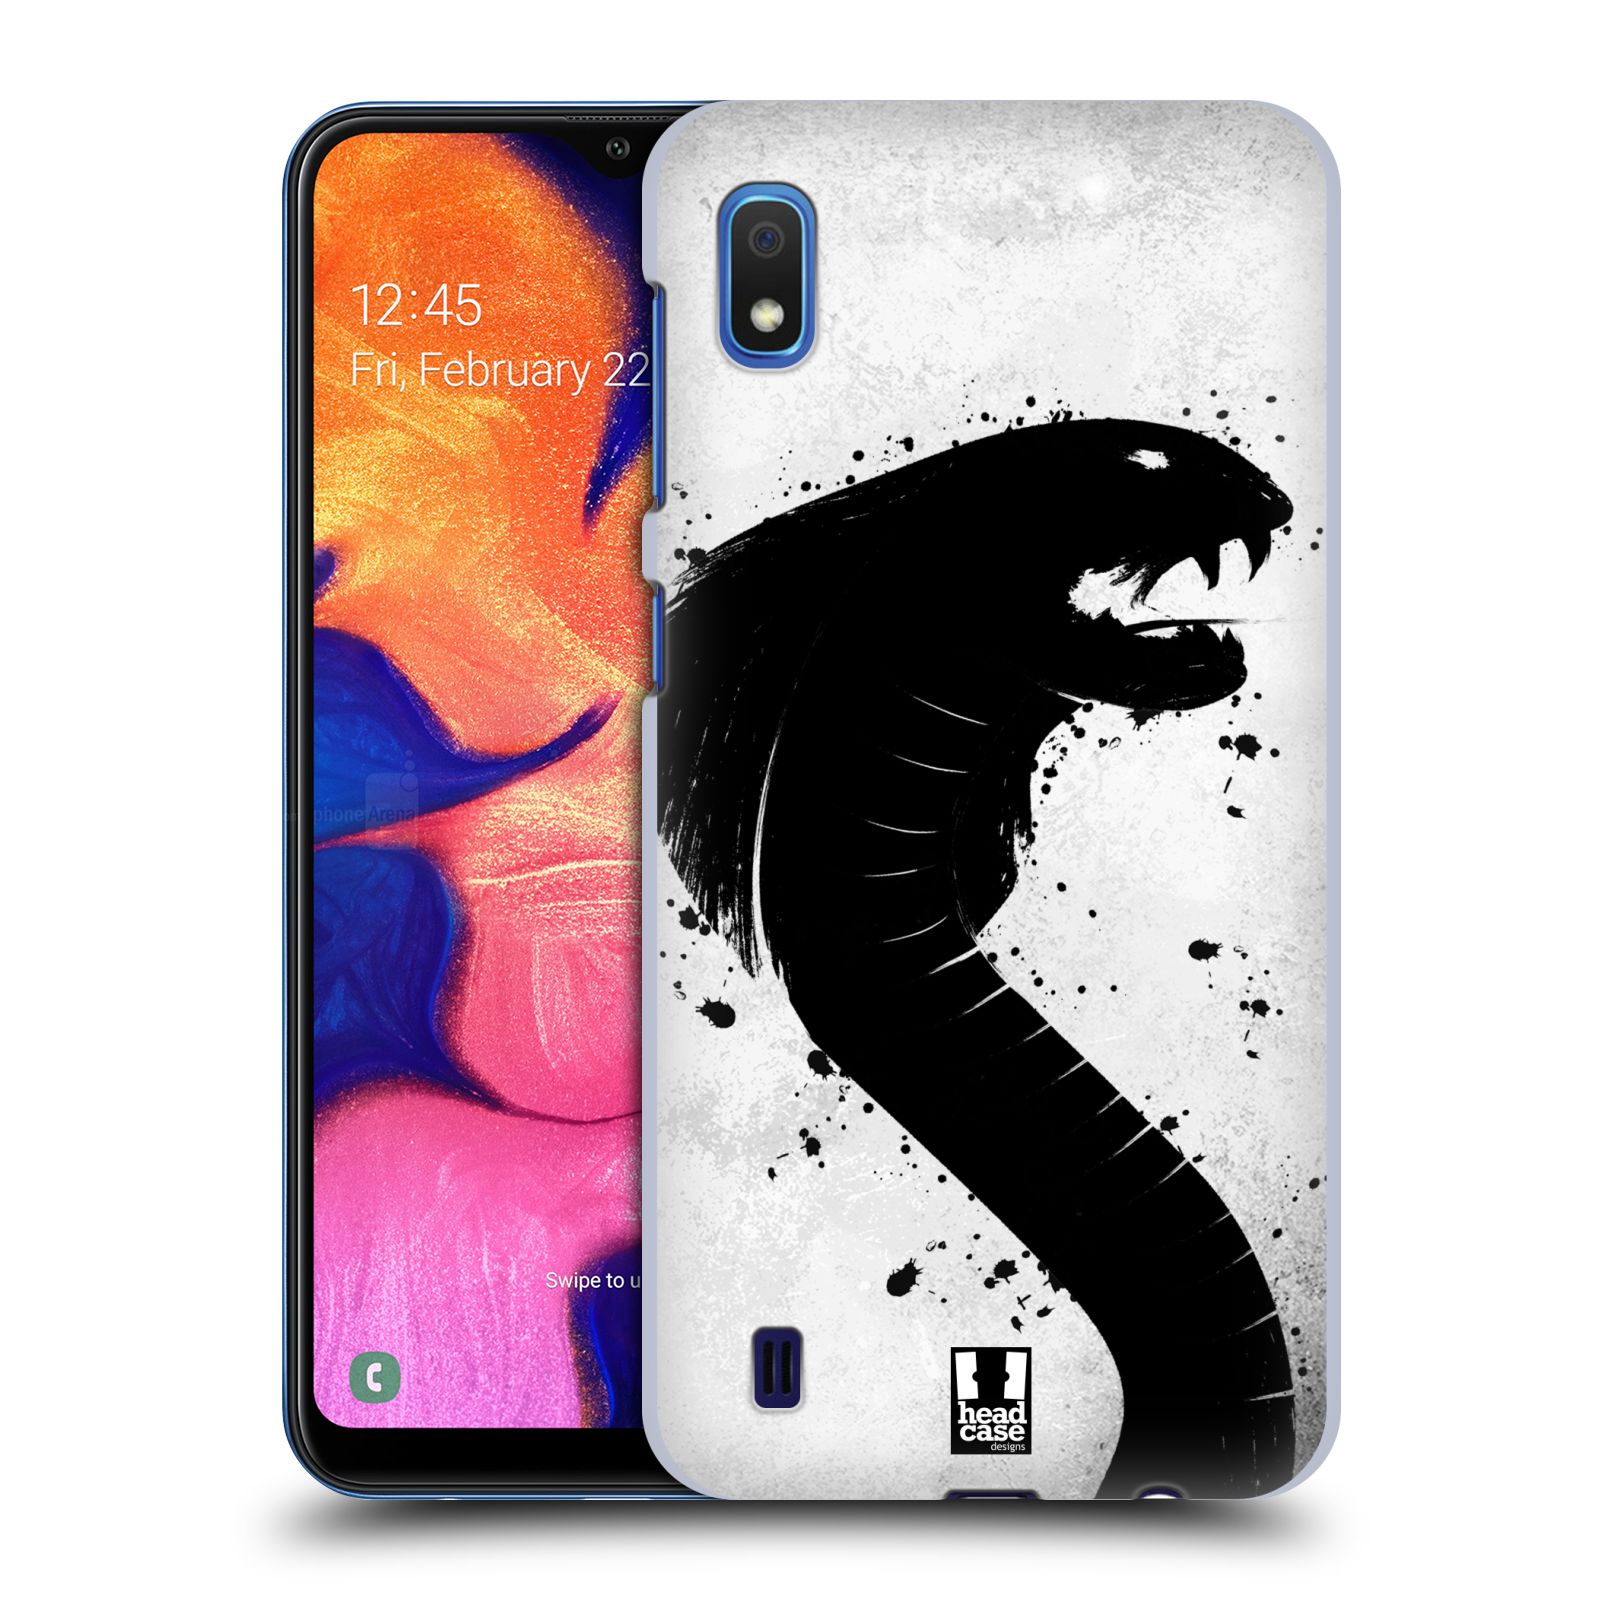 Pouzdro na mobil Samsung Galaxy A10 - HEAD CASE - vzor Kresba tuš zvíře had kobra